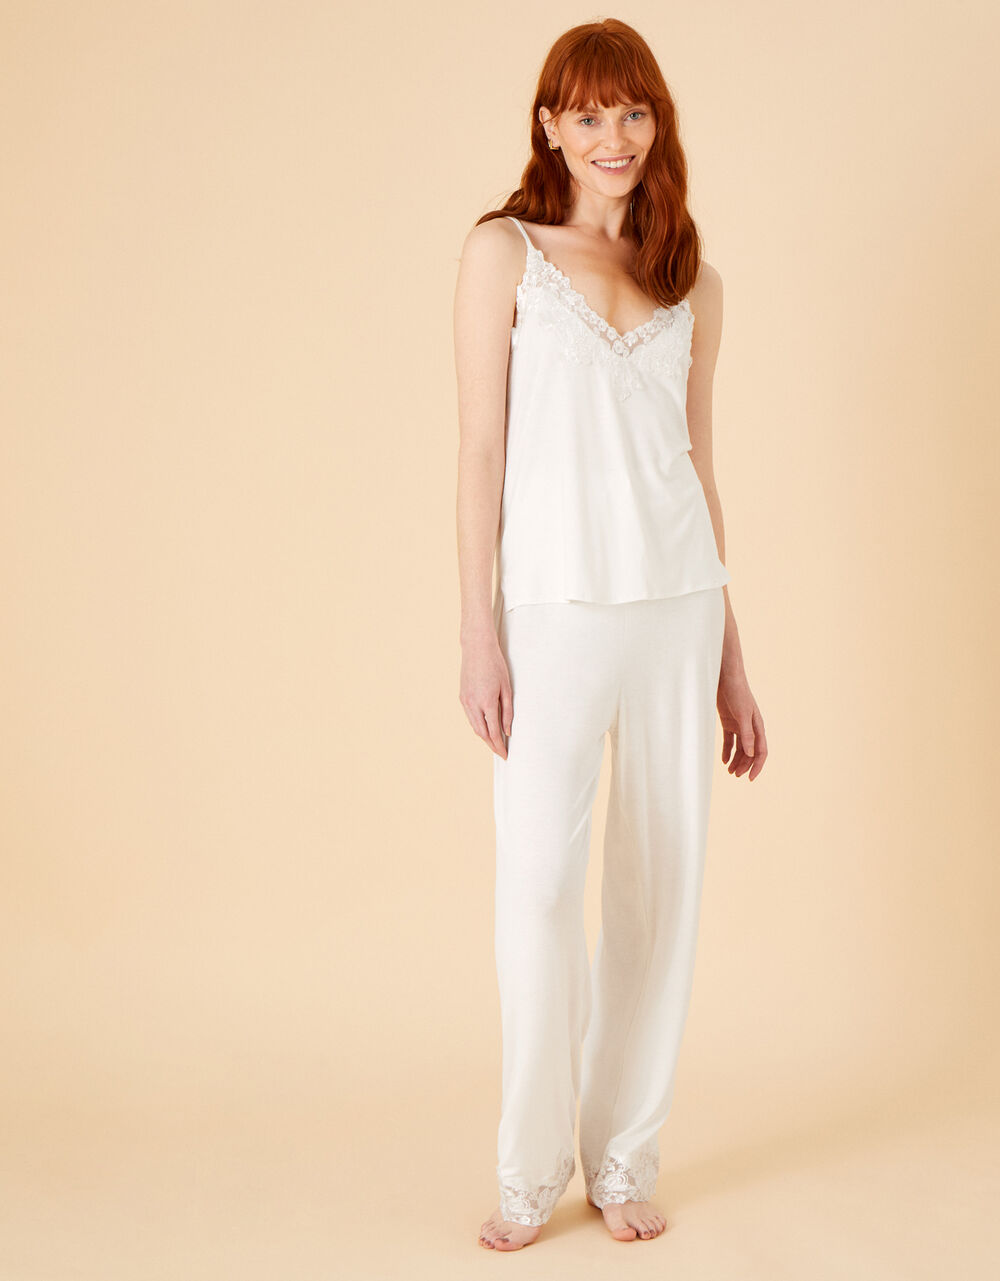 Women Women's Clothing | Bridal Lace Pyjama Set Ivory - RV17275